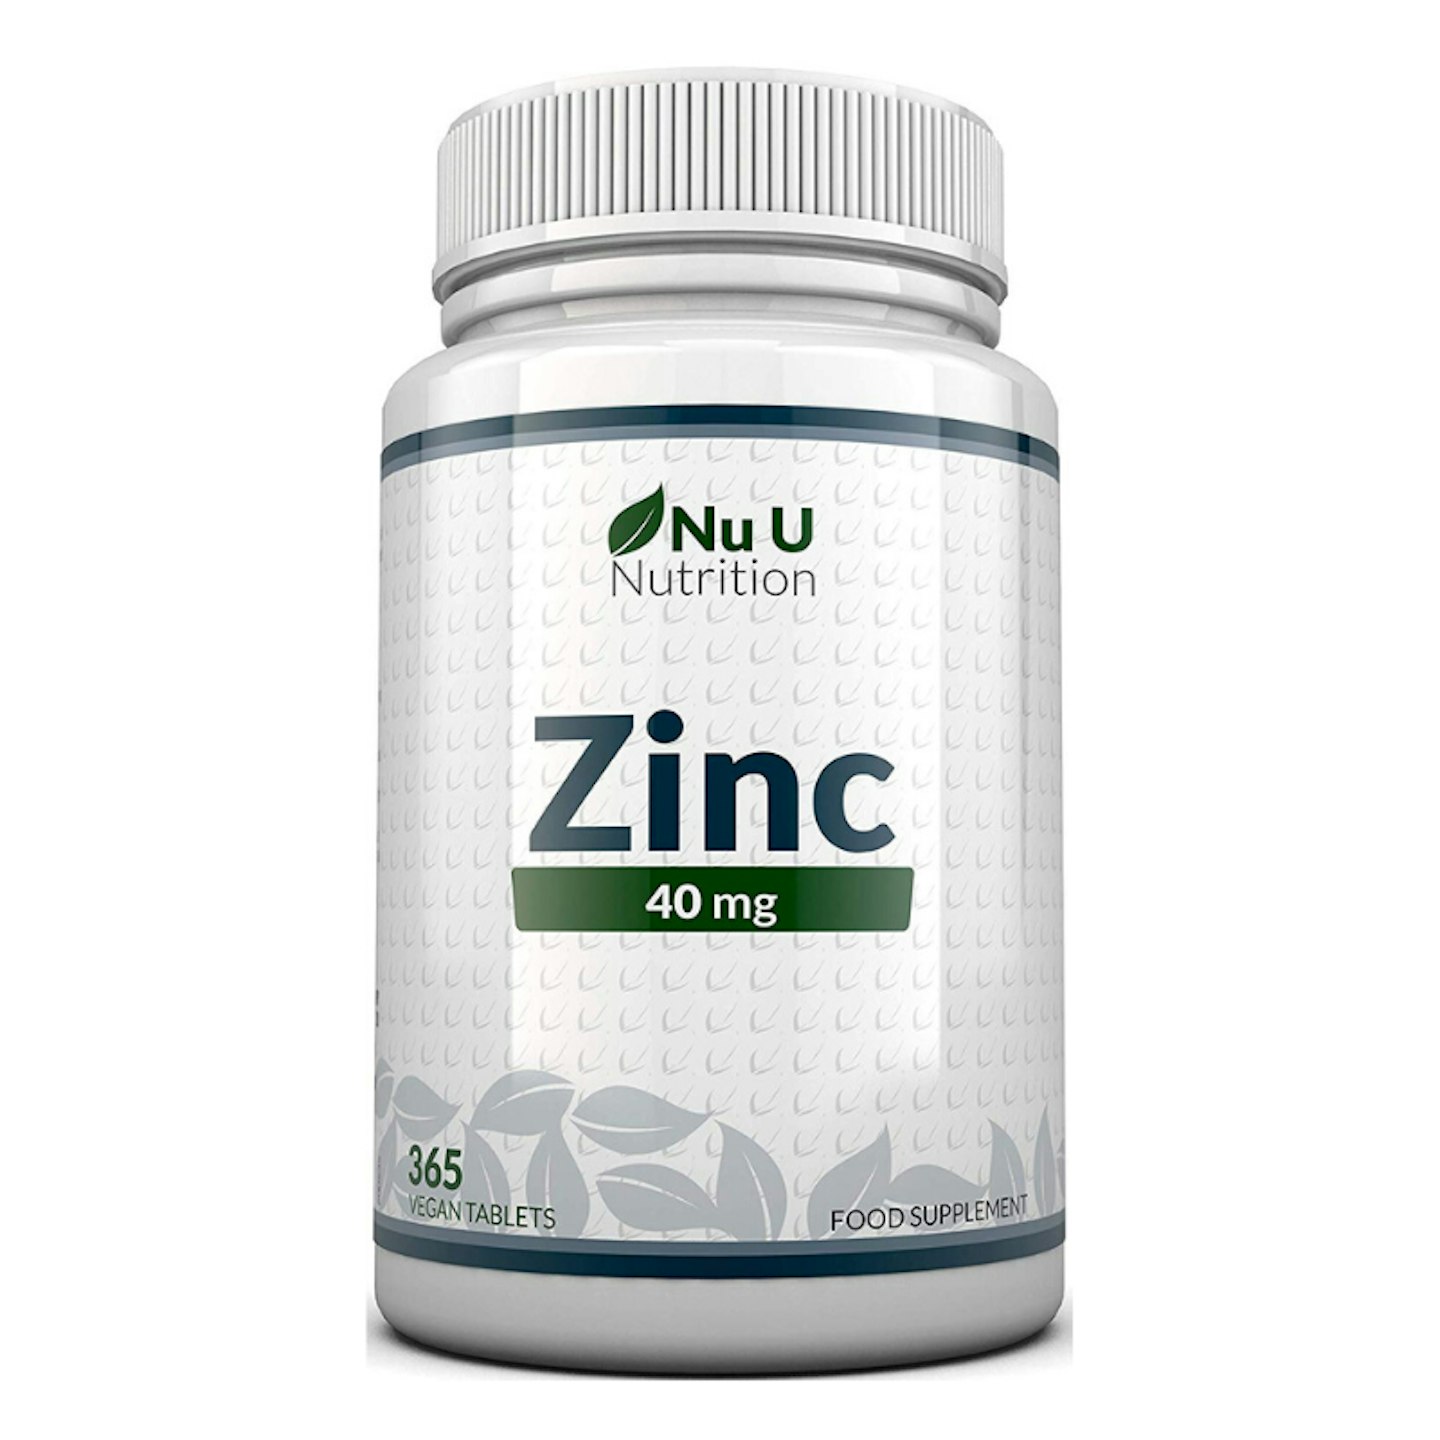 Nu U Nutrition Zinc Tablets